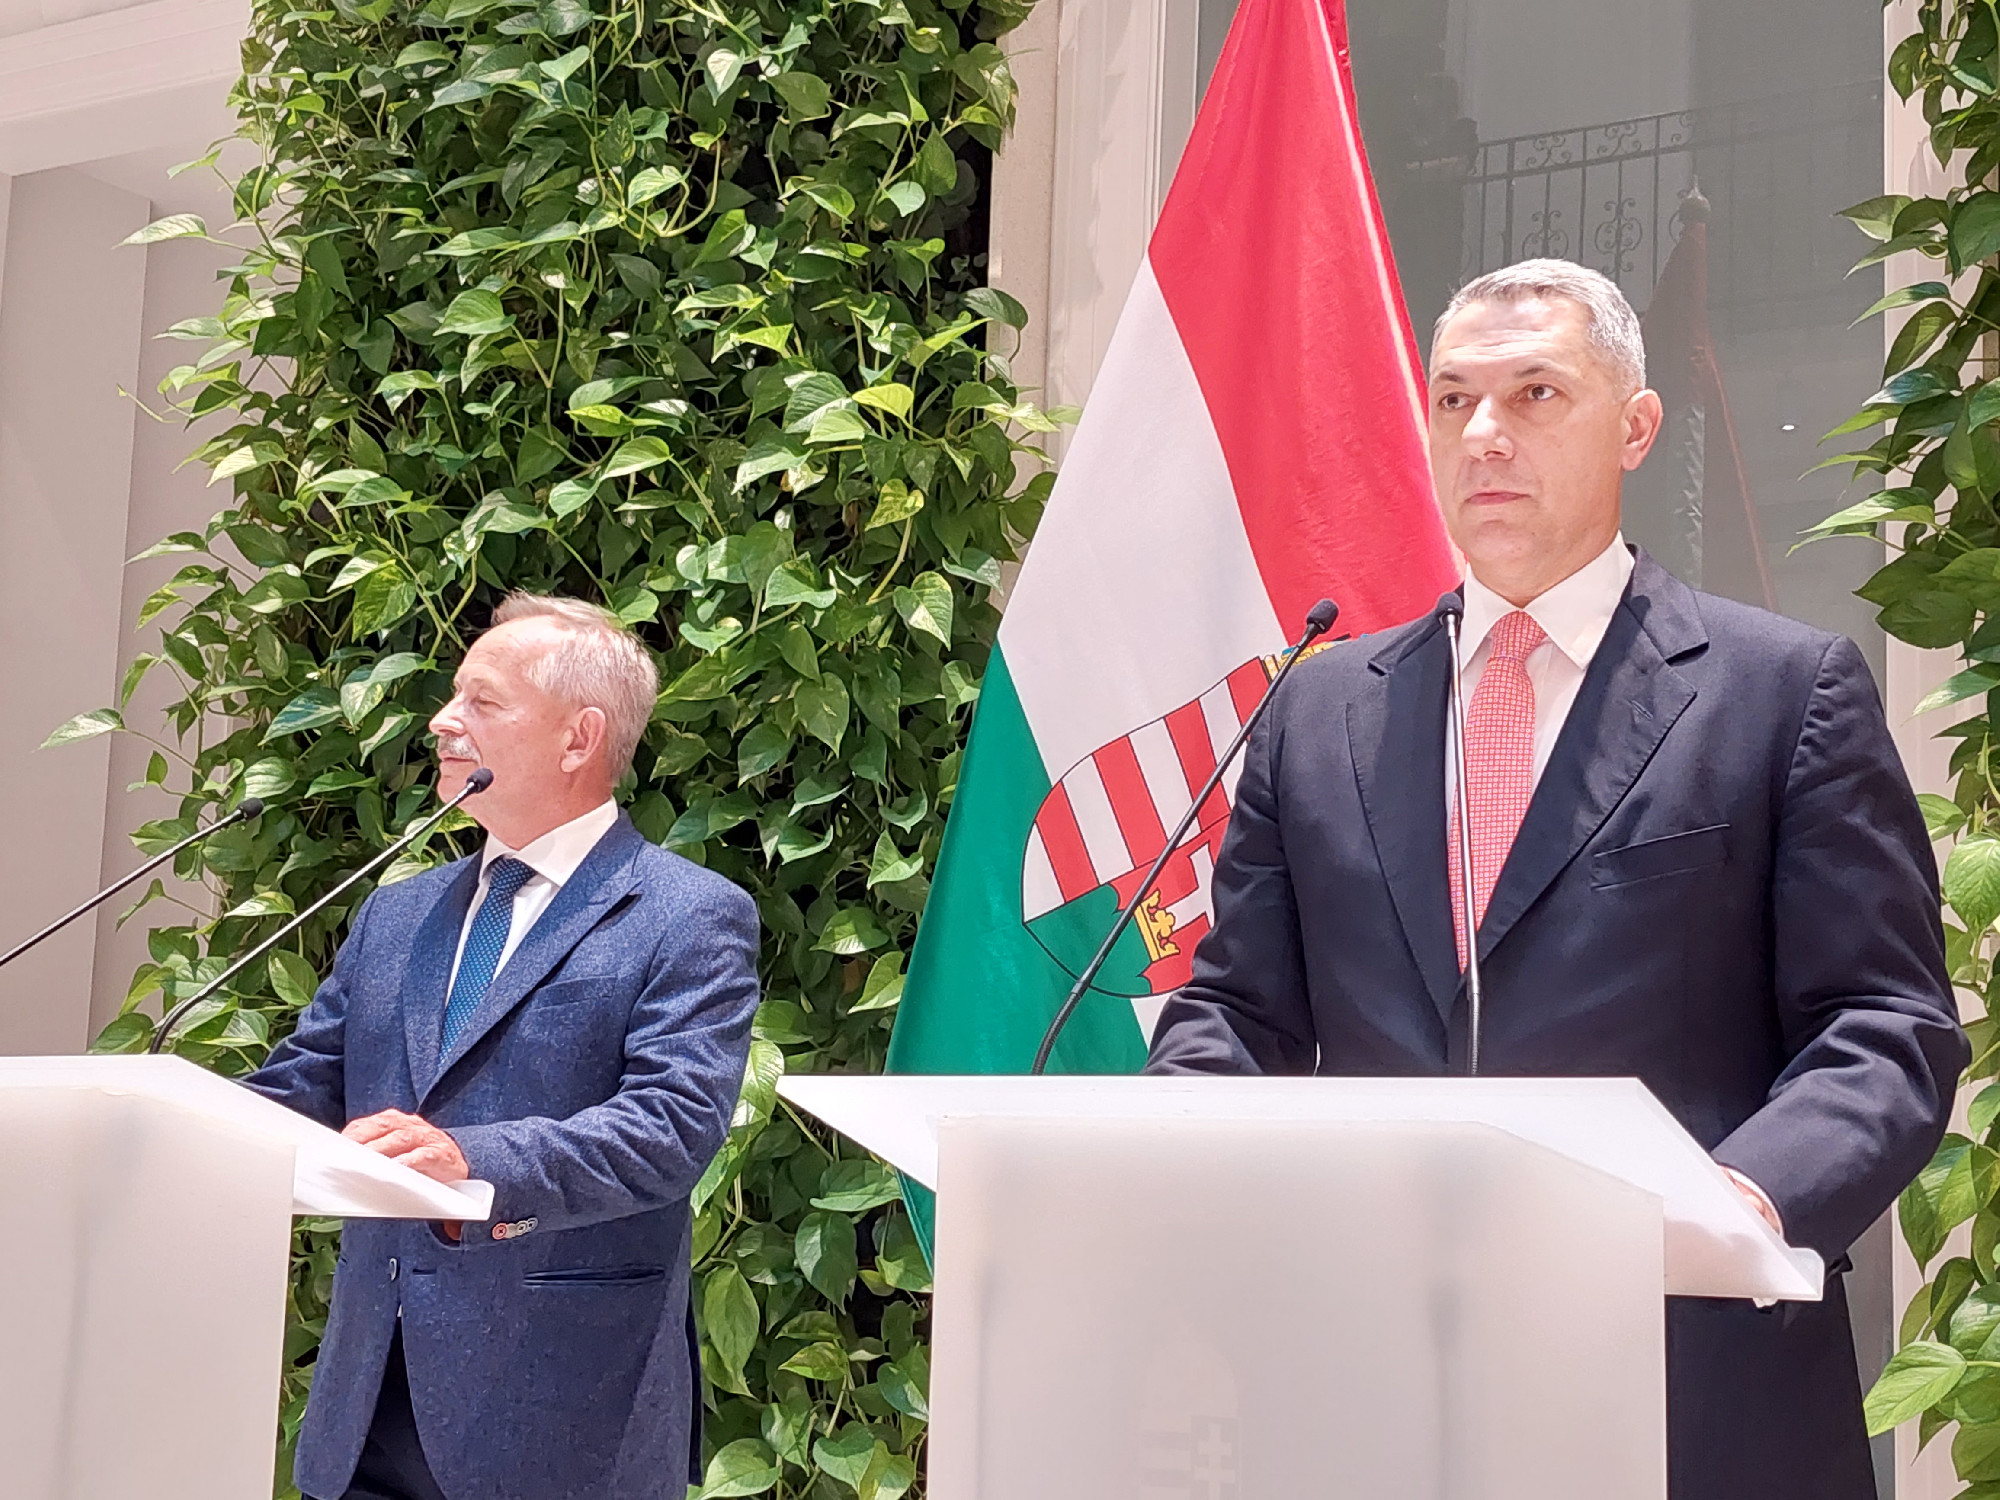 Aggályosnak tartják Lázárék törvényét – újabb magyar uniós forrásokat függeszthetnek fel